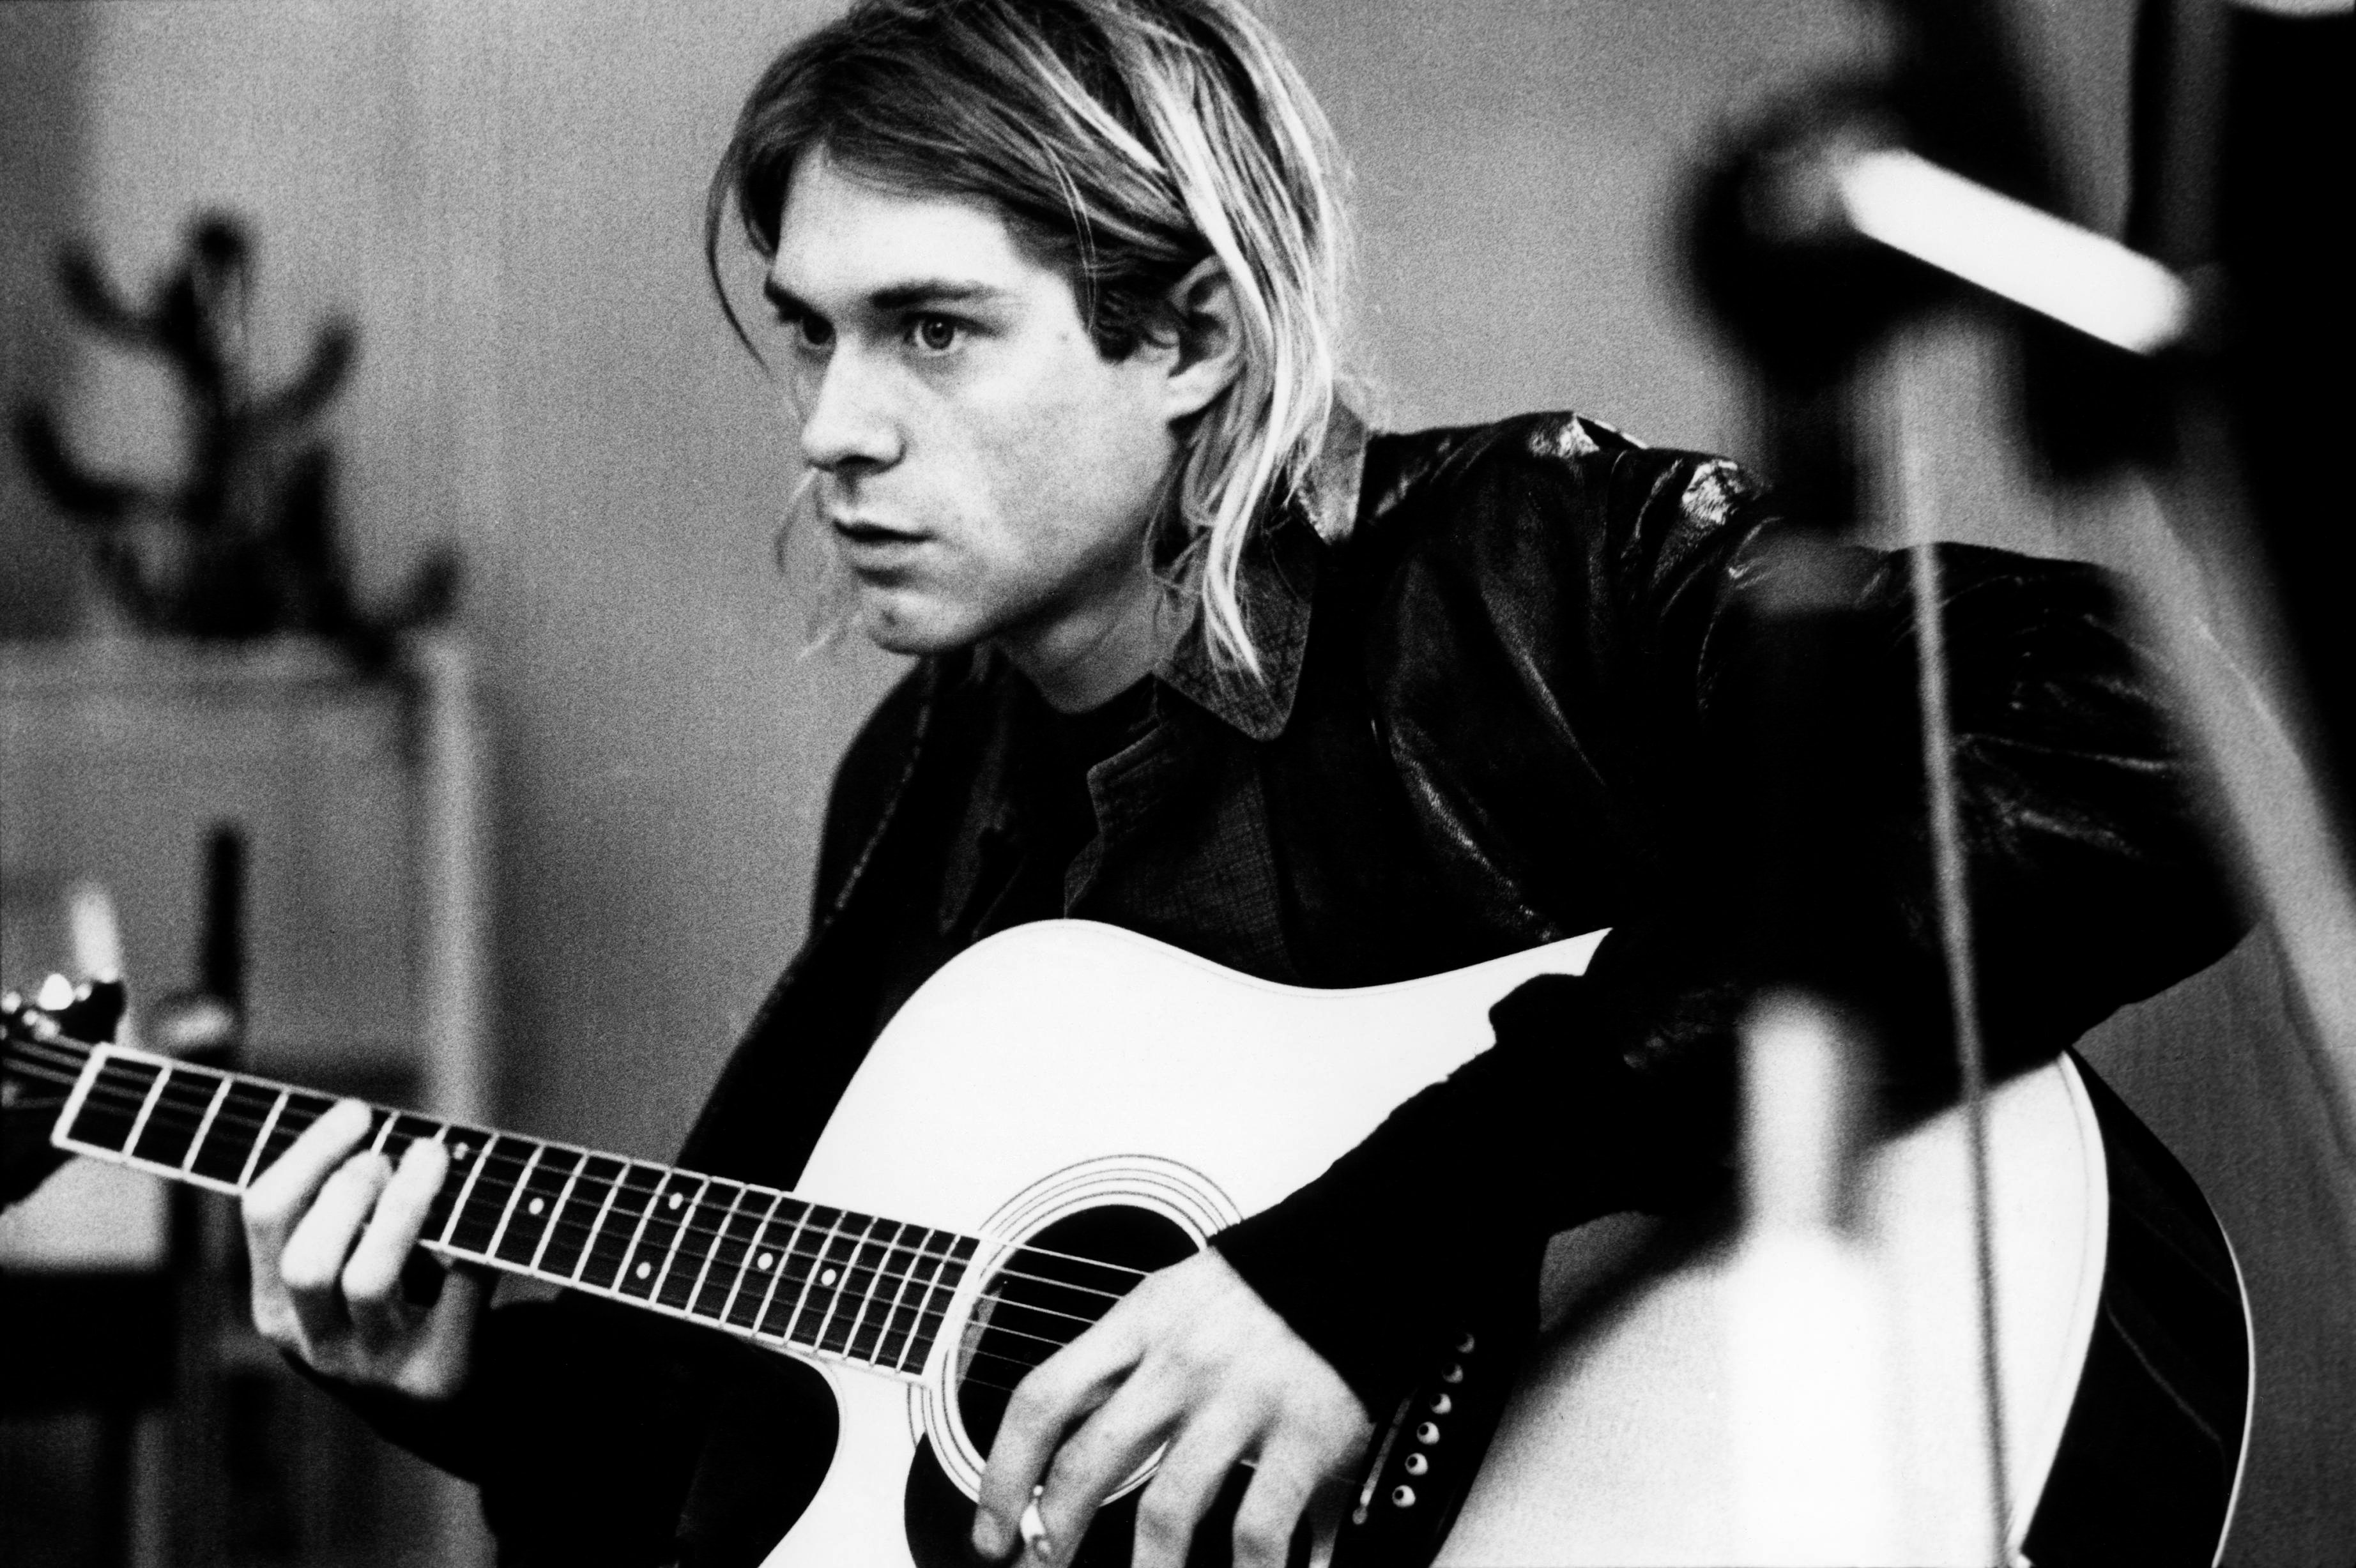 Kurt Cobain aux Hilversum Studios en novembre 1991. Photo par Michel Linssen/Redferns via Getty Images.